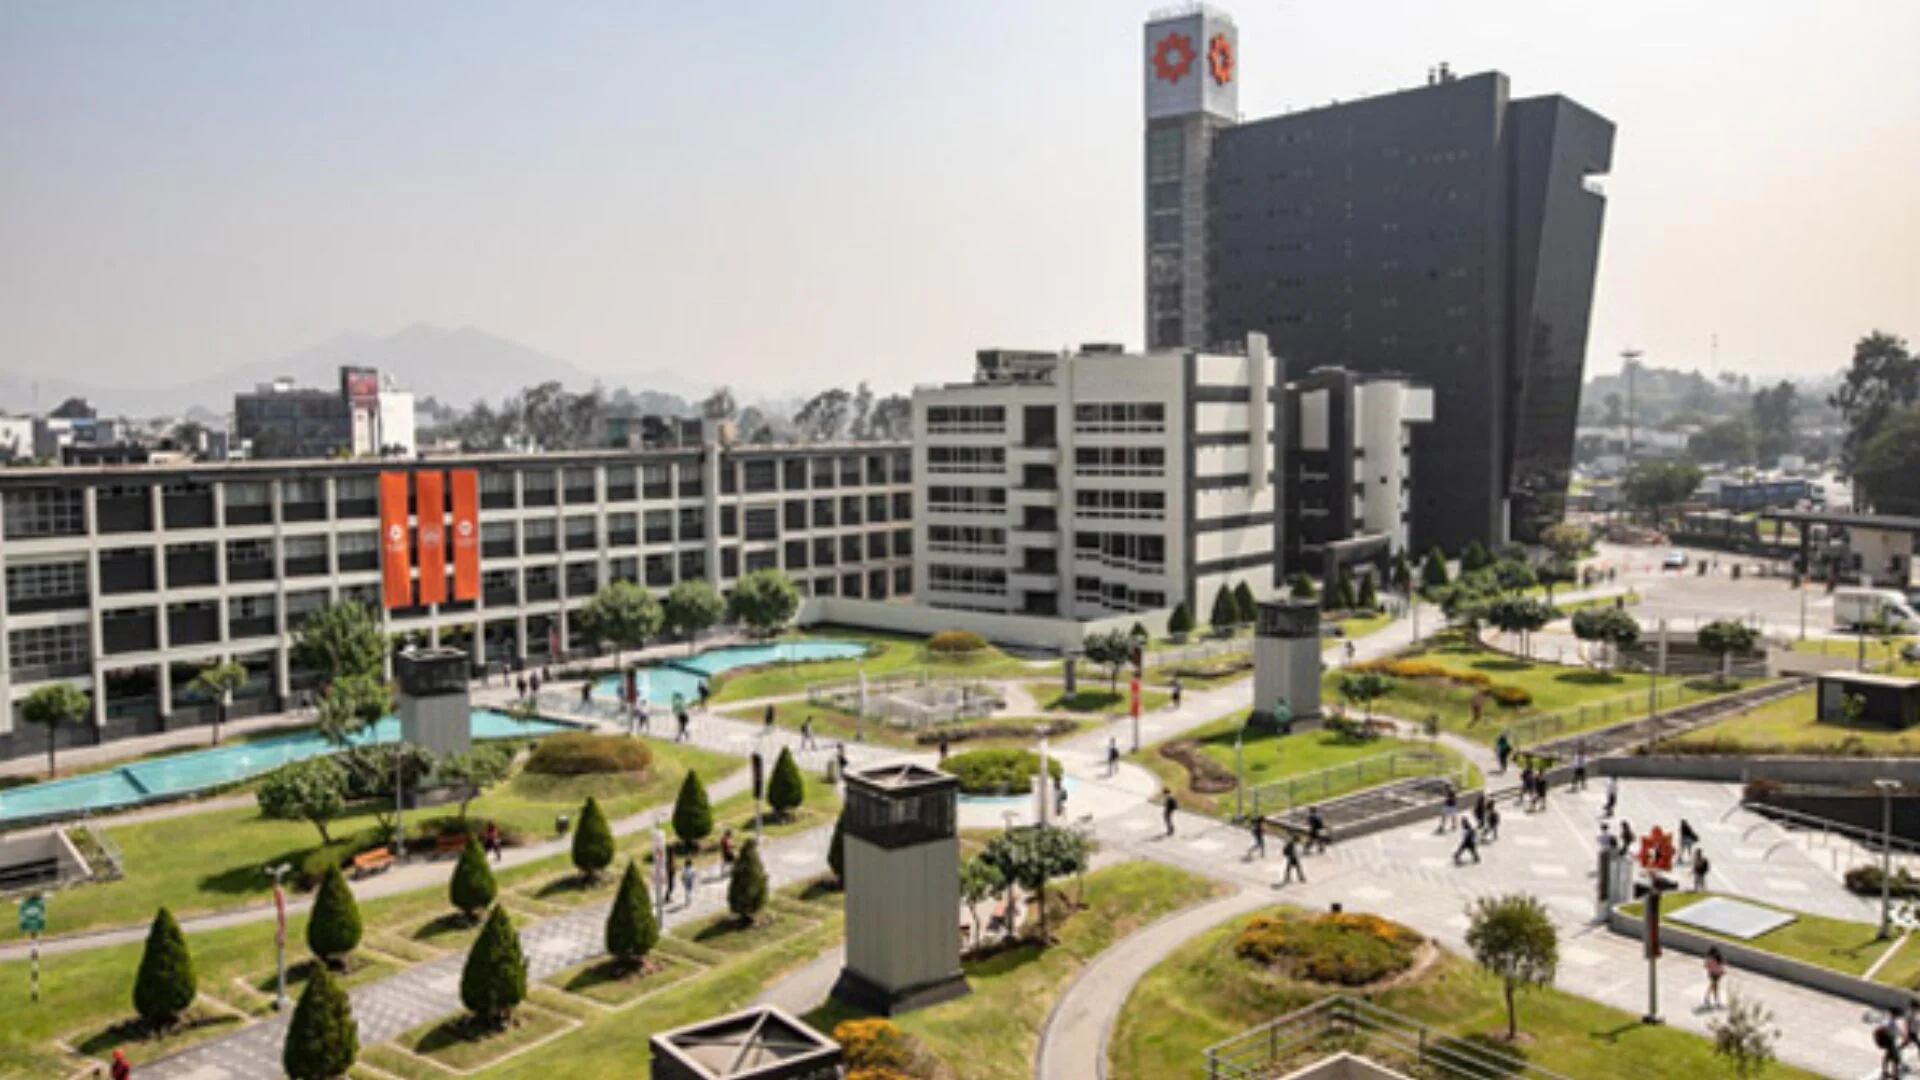 Confuso accidente en la Universidad de Lima: Reportan que joven se cayó desde lo alto de pabellón